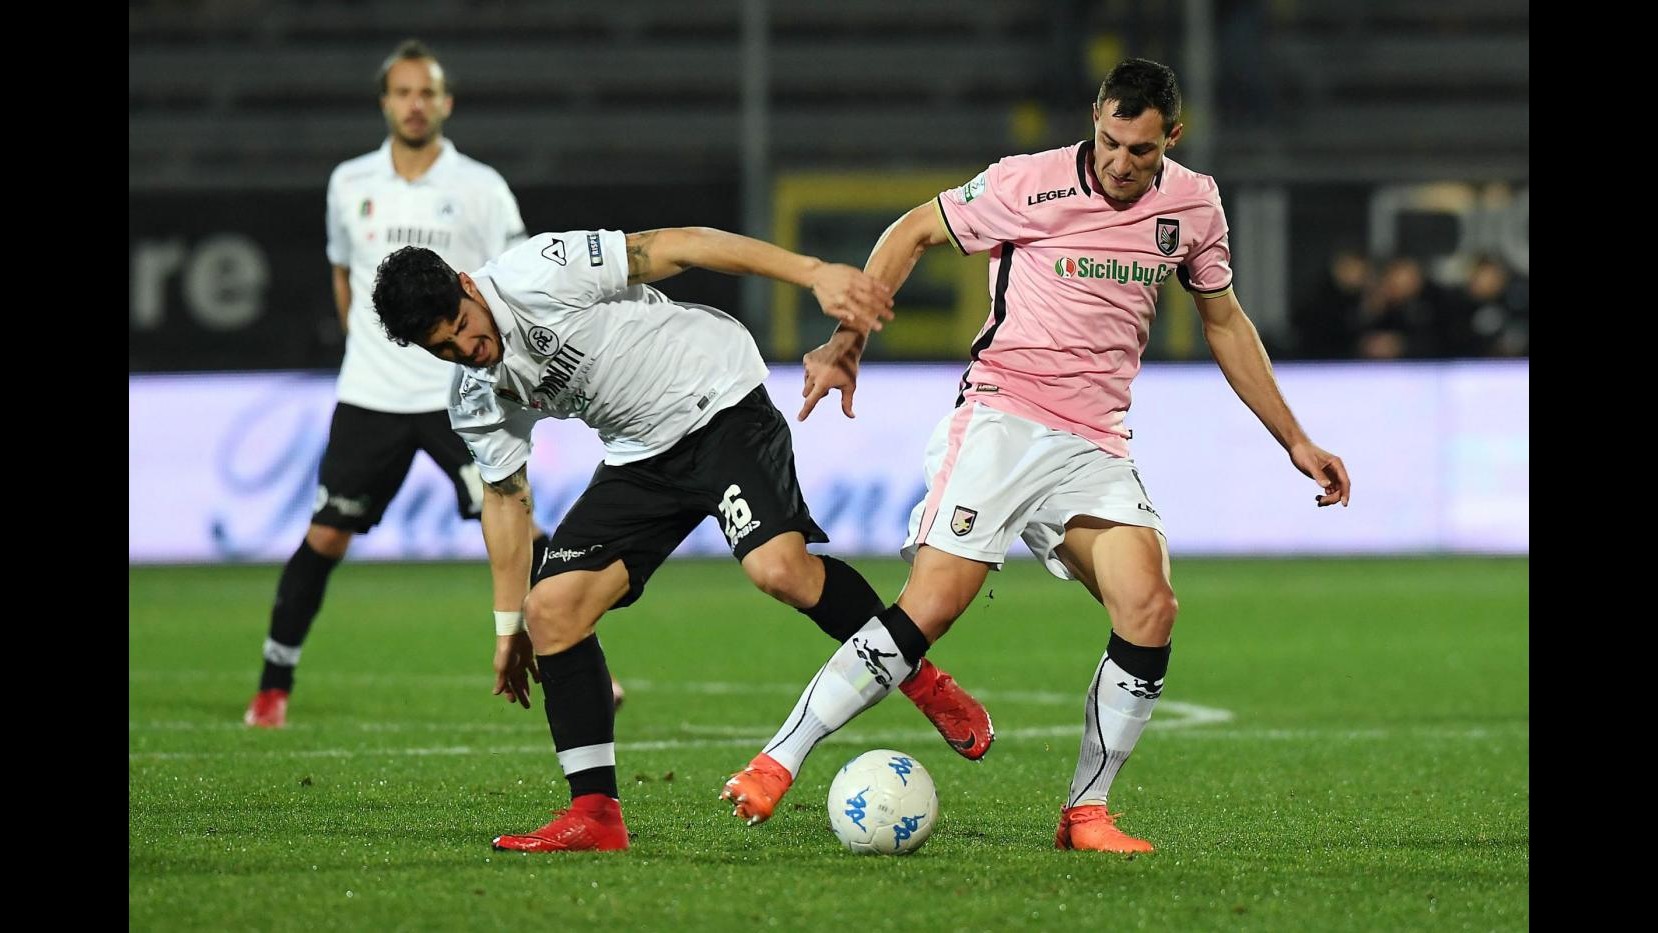 Serie B, Spezia-Palermo 0-0 | IL FOTORACCONTO